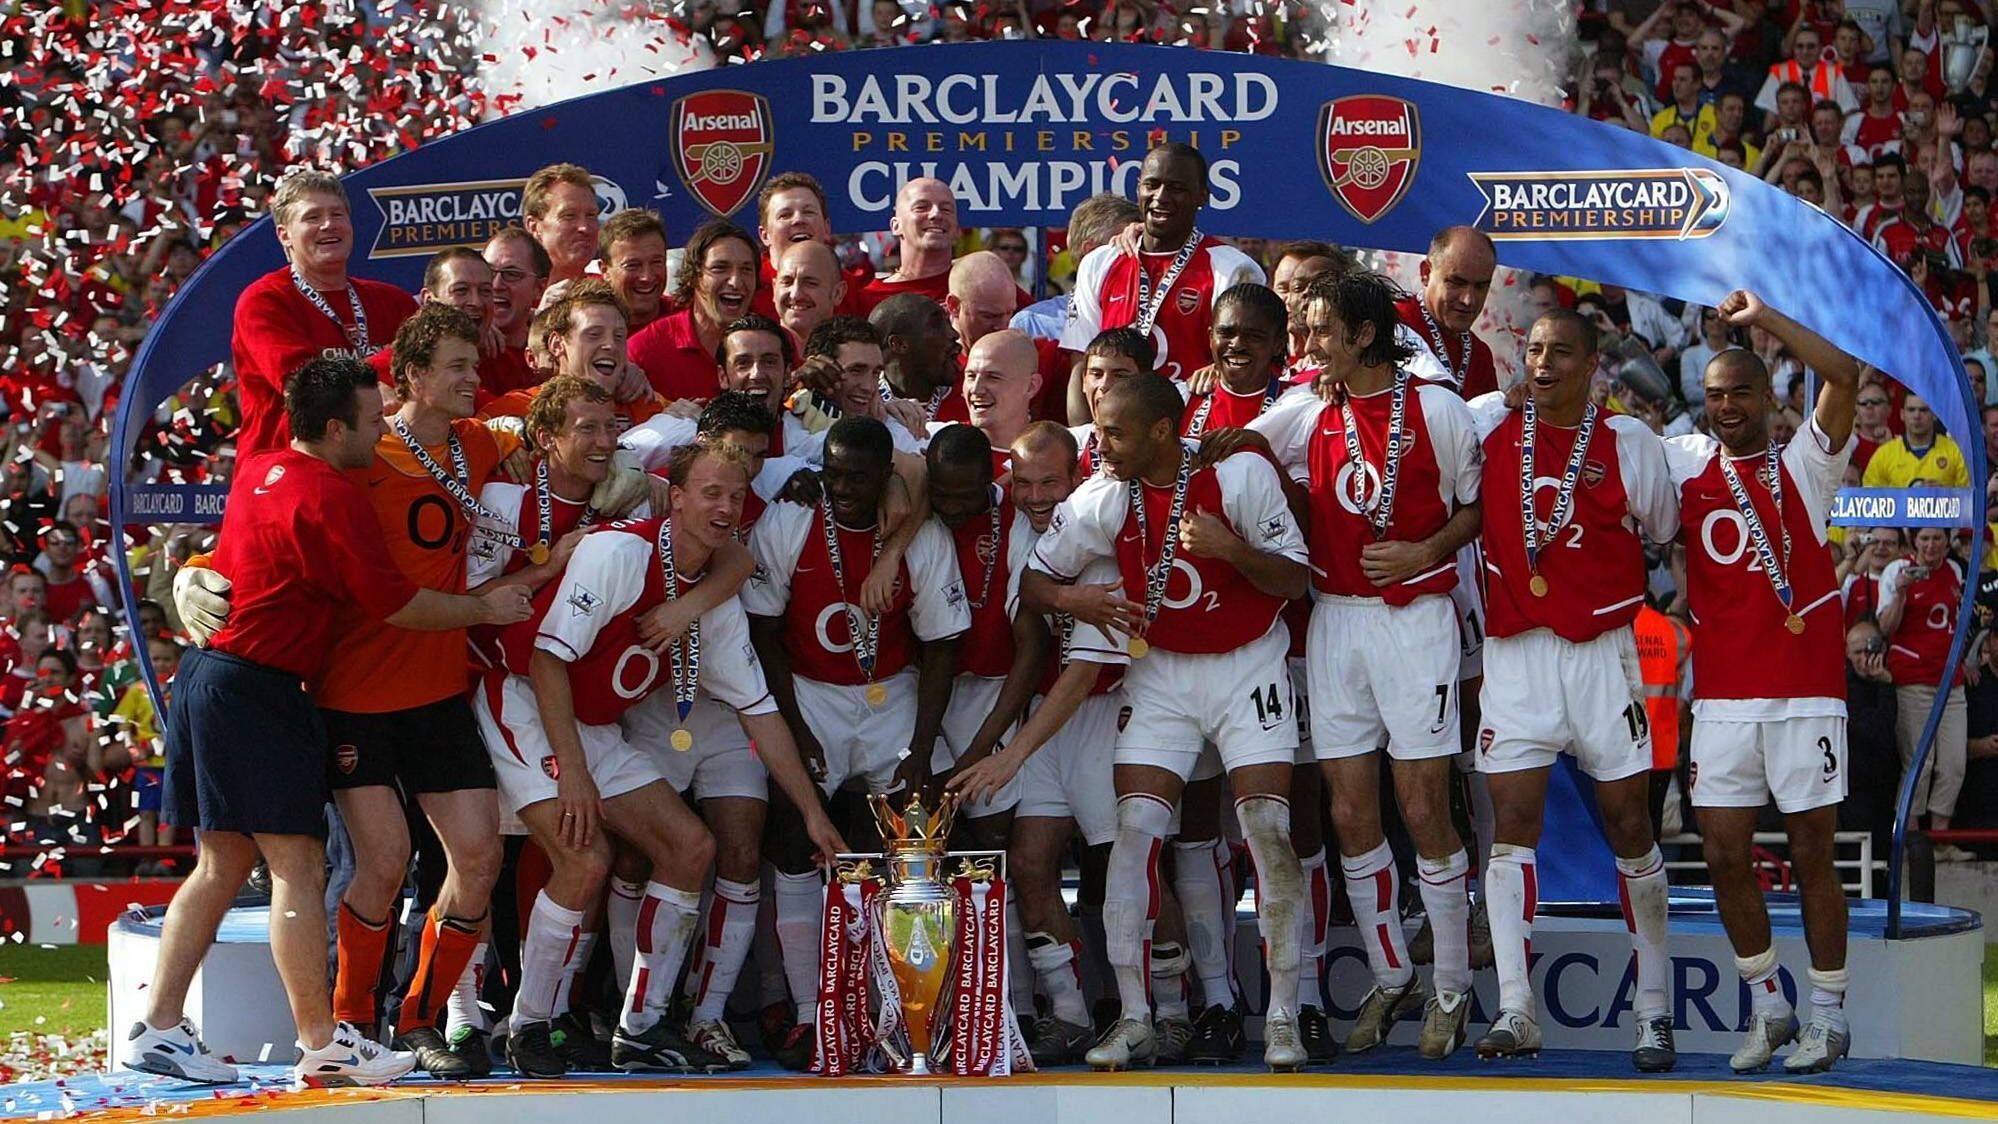 <strong>England: FC Arsenal 2003/04 </strong><br>
                Die Premier League gilt als die stärkste Liga der Welt. Auch deshalb sind vielen Fußballfans vor allem die "Gunners" als ungeschlagener Ligameister in Erinnerung. Als bislang einziges Team aus England schafften die Londoner die perfekte Saison. Die Erfolgsgaranten der damaligen Elf um Torhüter Jens Lehmann, Dennis Bergkamp, Patrick Viera und Torjäger Thierry Henry werden bis heute von den Arsenal-Anhängern als die "Invincibles" verehrt.